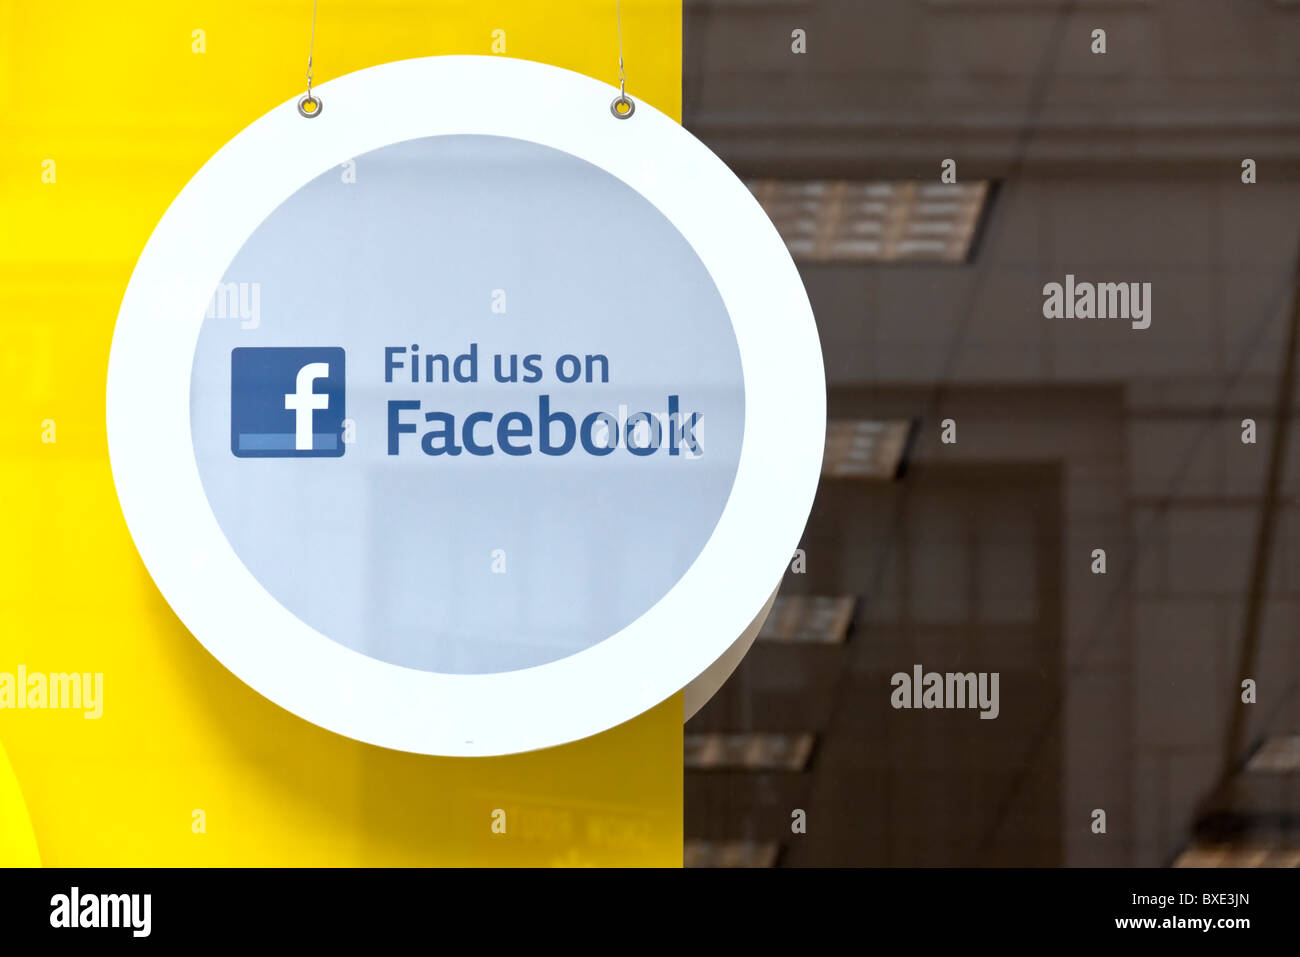 Facebook signe, avec logo rond, suspendu dans la fenêtre de magasin, 'nous sommes sur Facebook" Banque D'Images